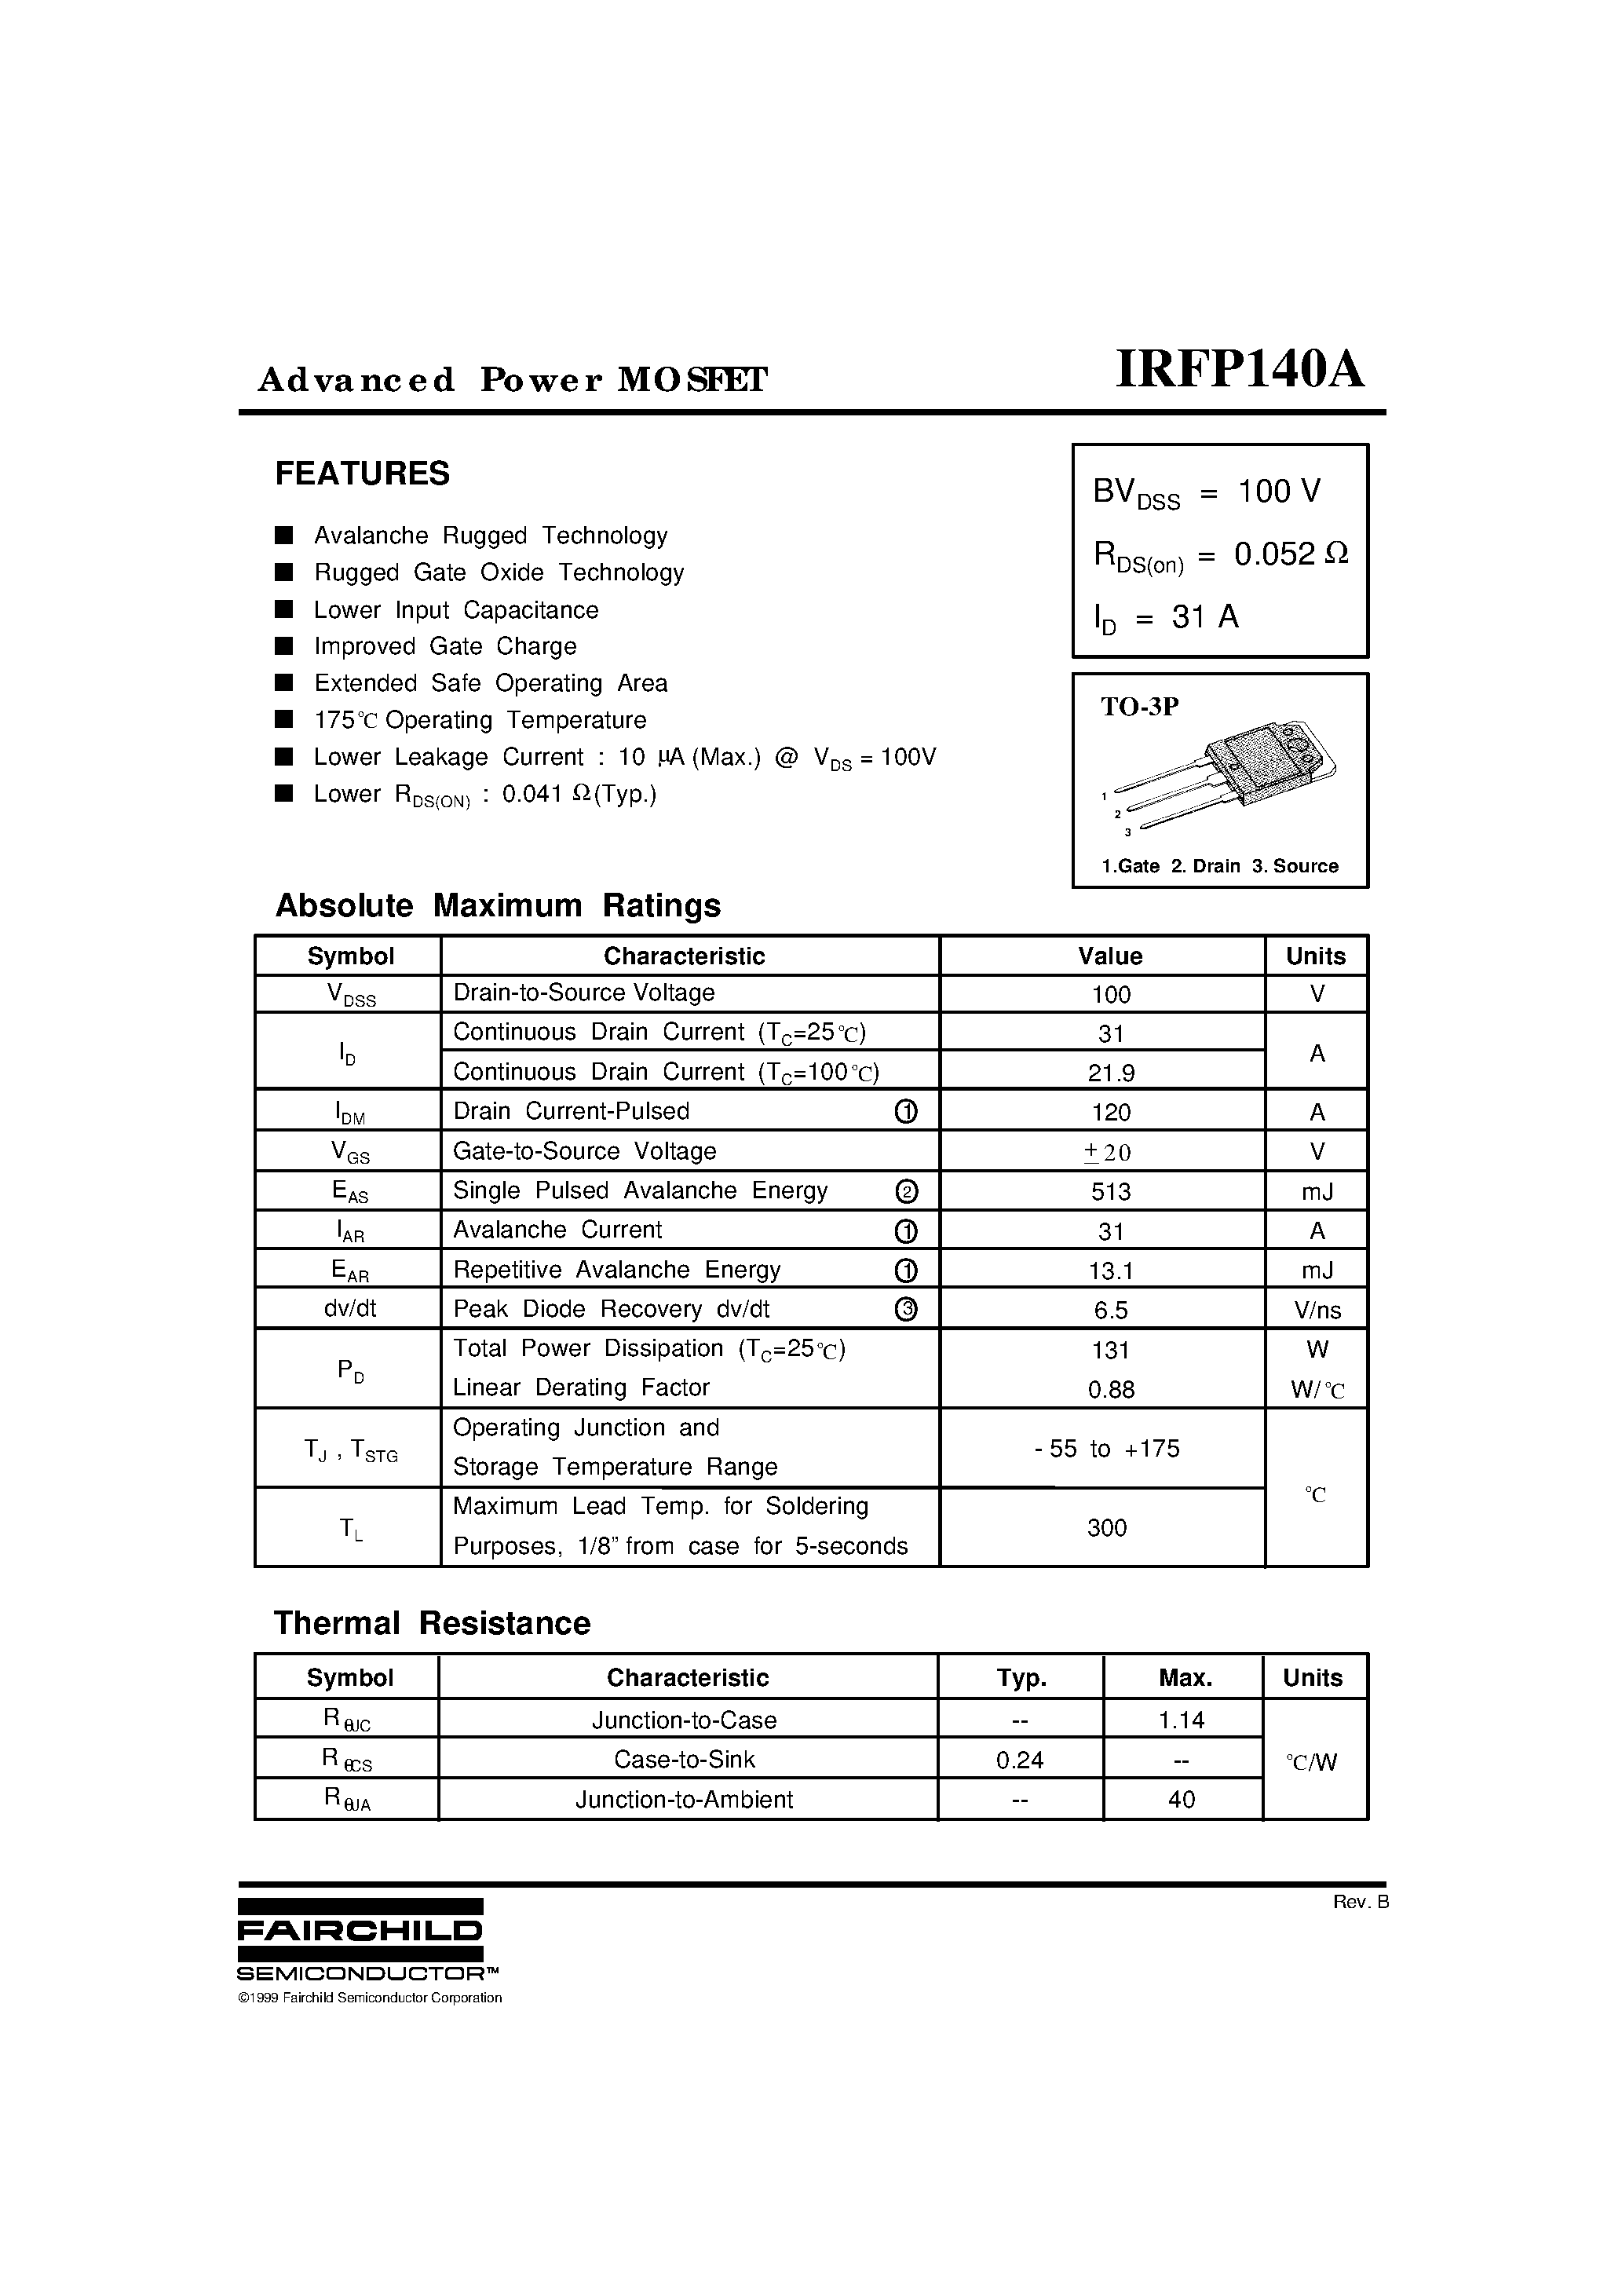 Даташит IRFP140A - Advanced Power MOSFET страница 1